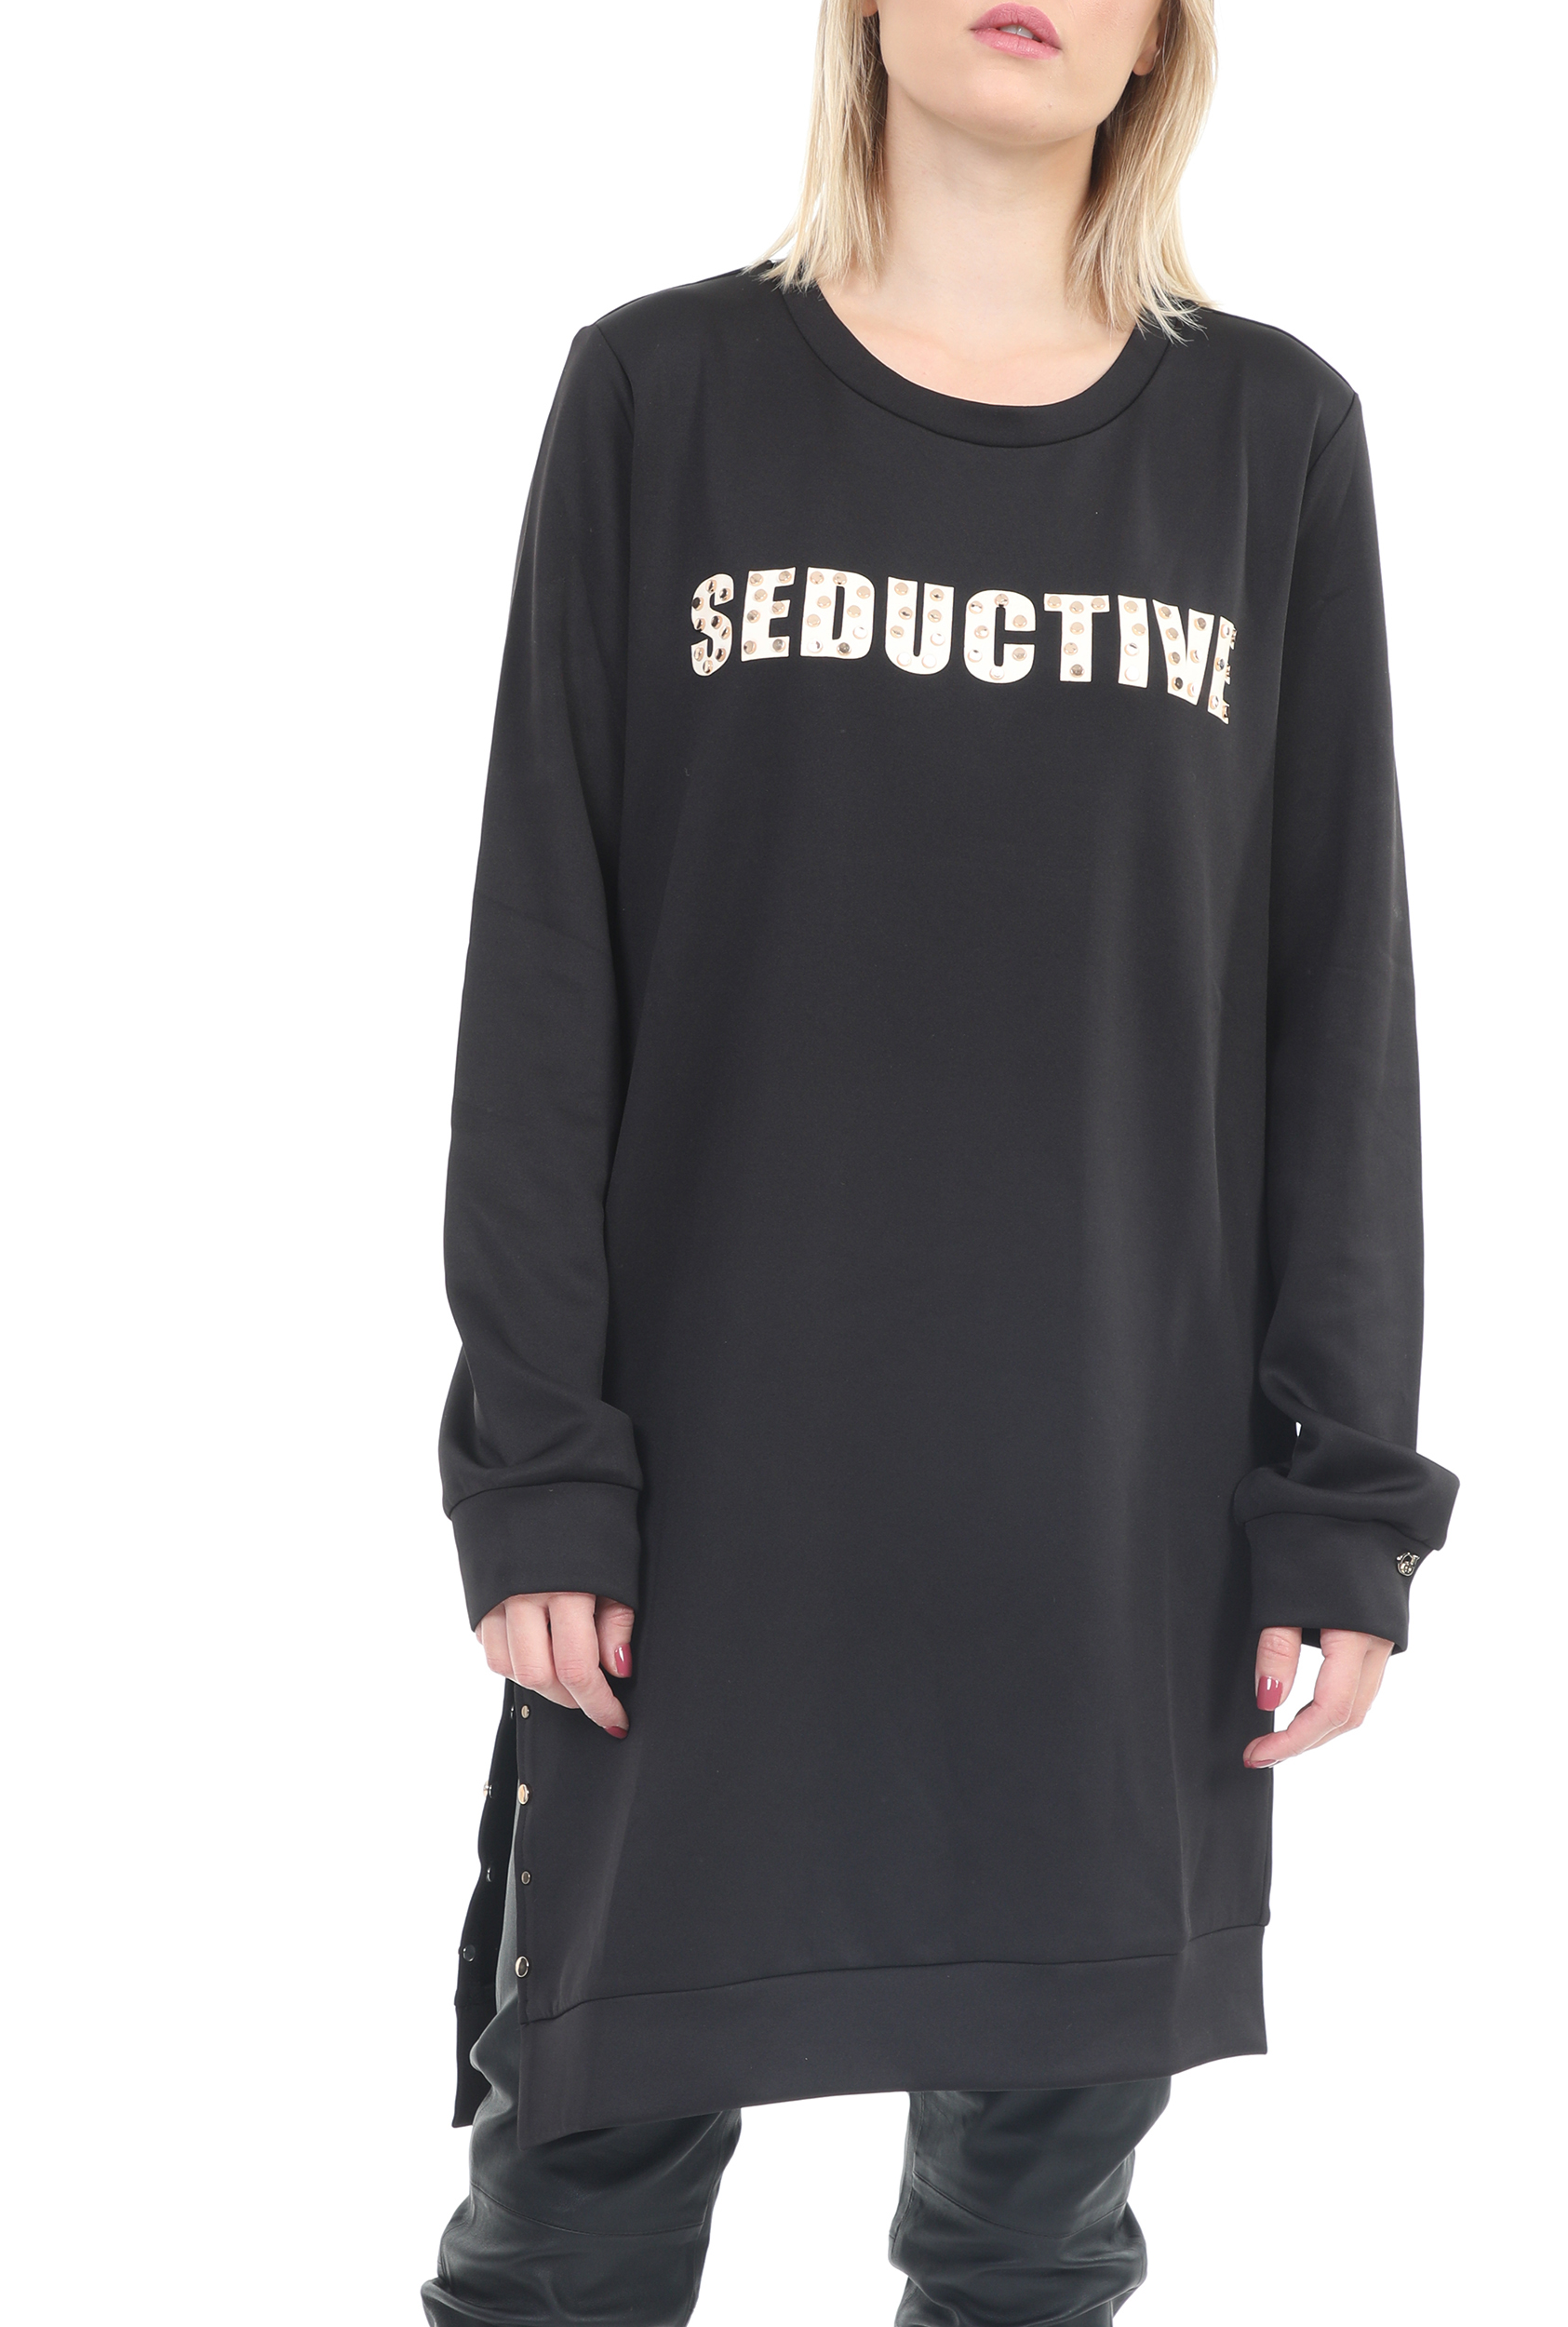 Γυναικεία/Ρούχα/Μπλούζες/Μακρυμάνικες GAUDI - Γυναικεία μακρυμάνικη μπλούζα GAUDI μαύρη